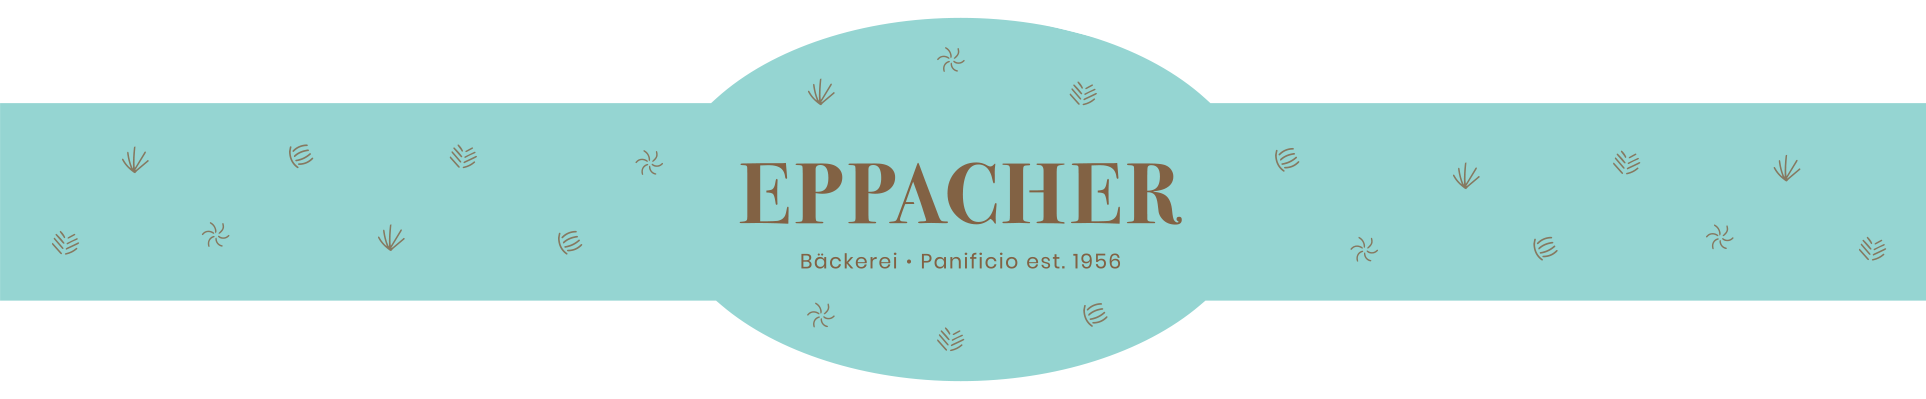 (c) Eppacher.com